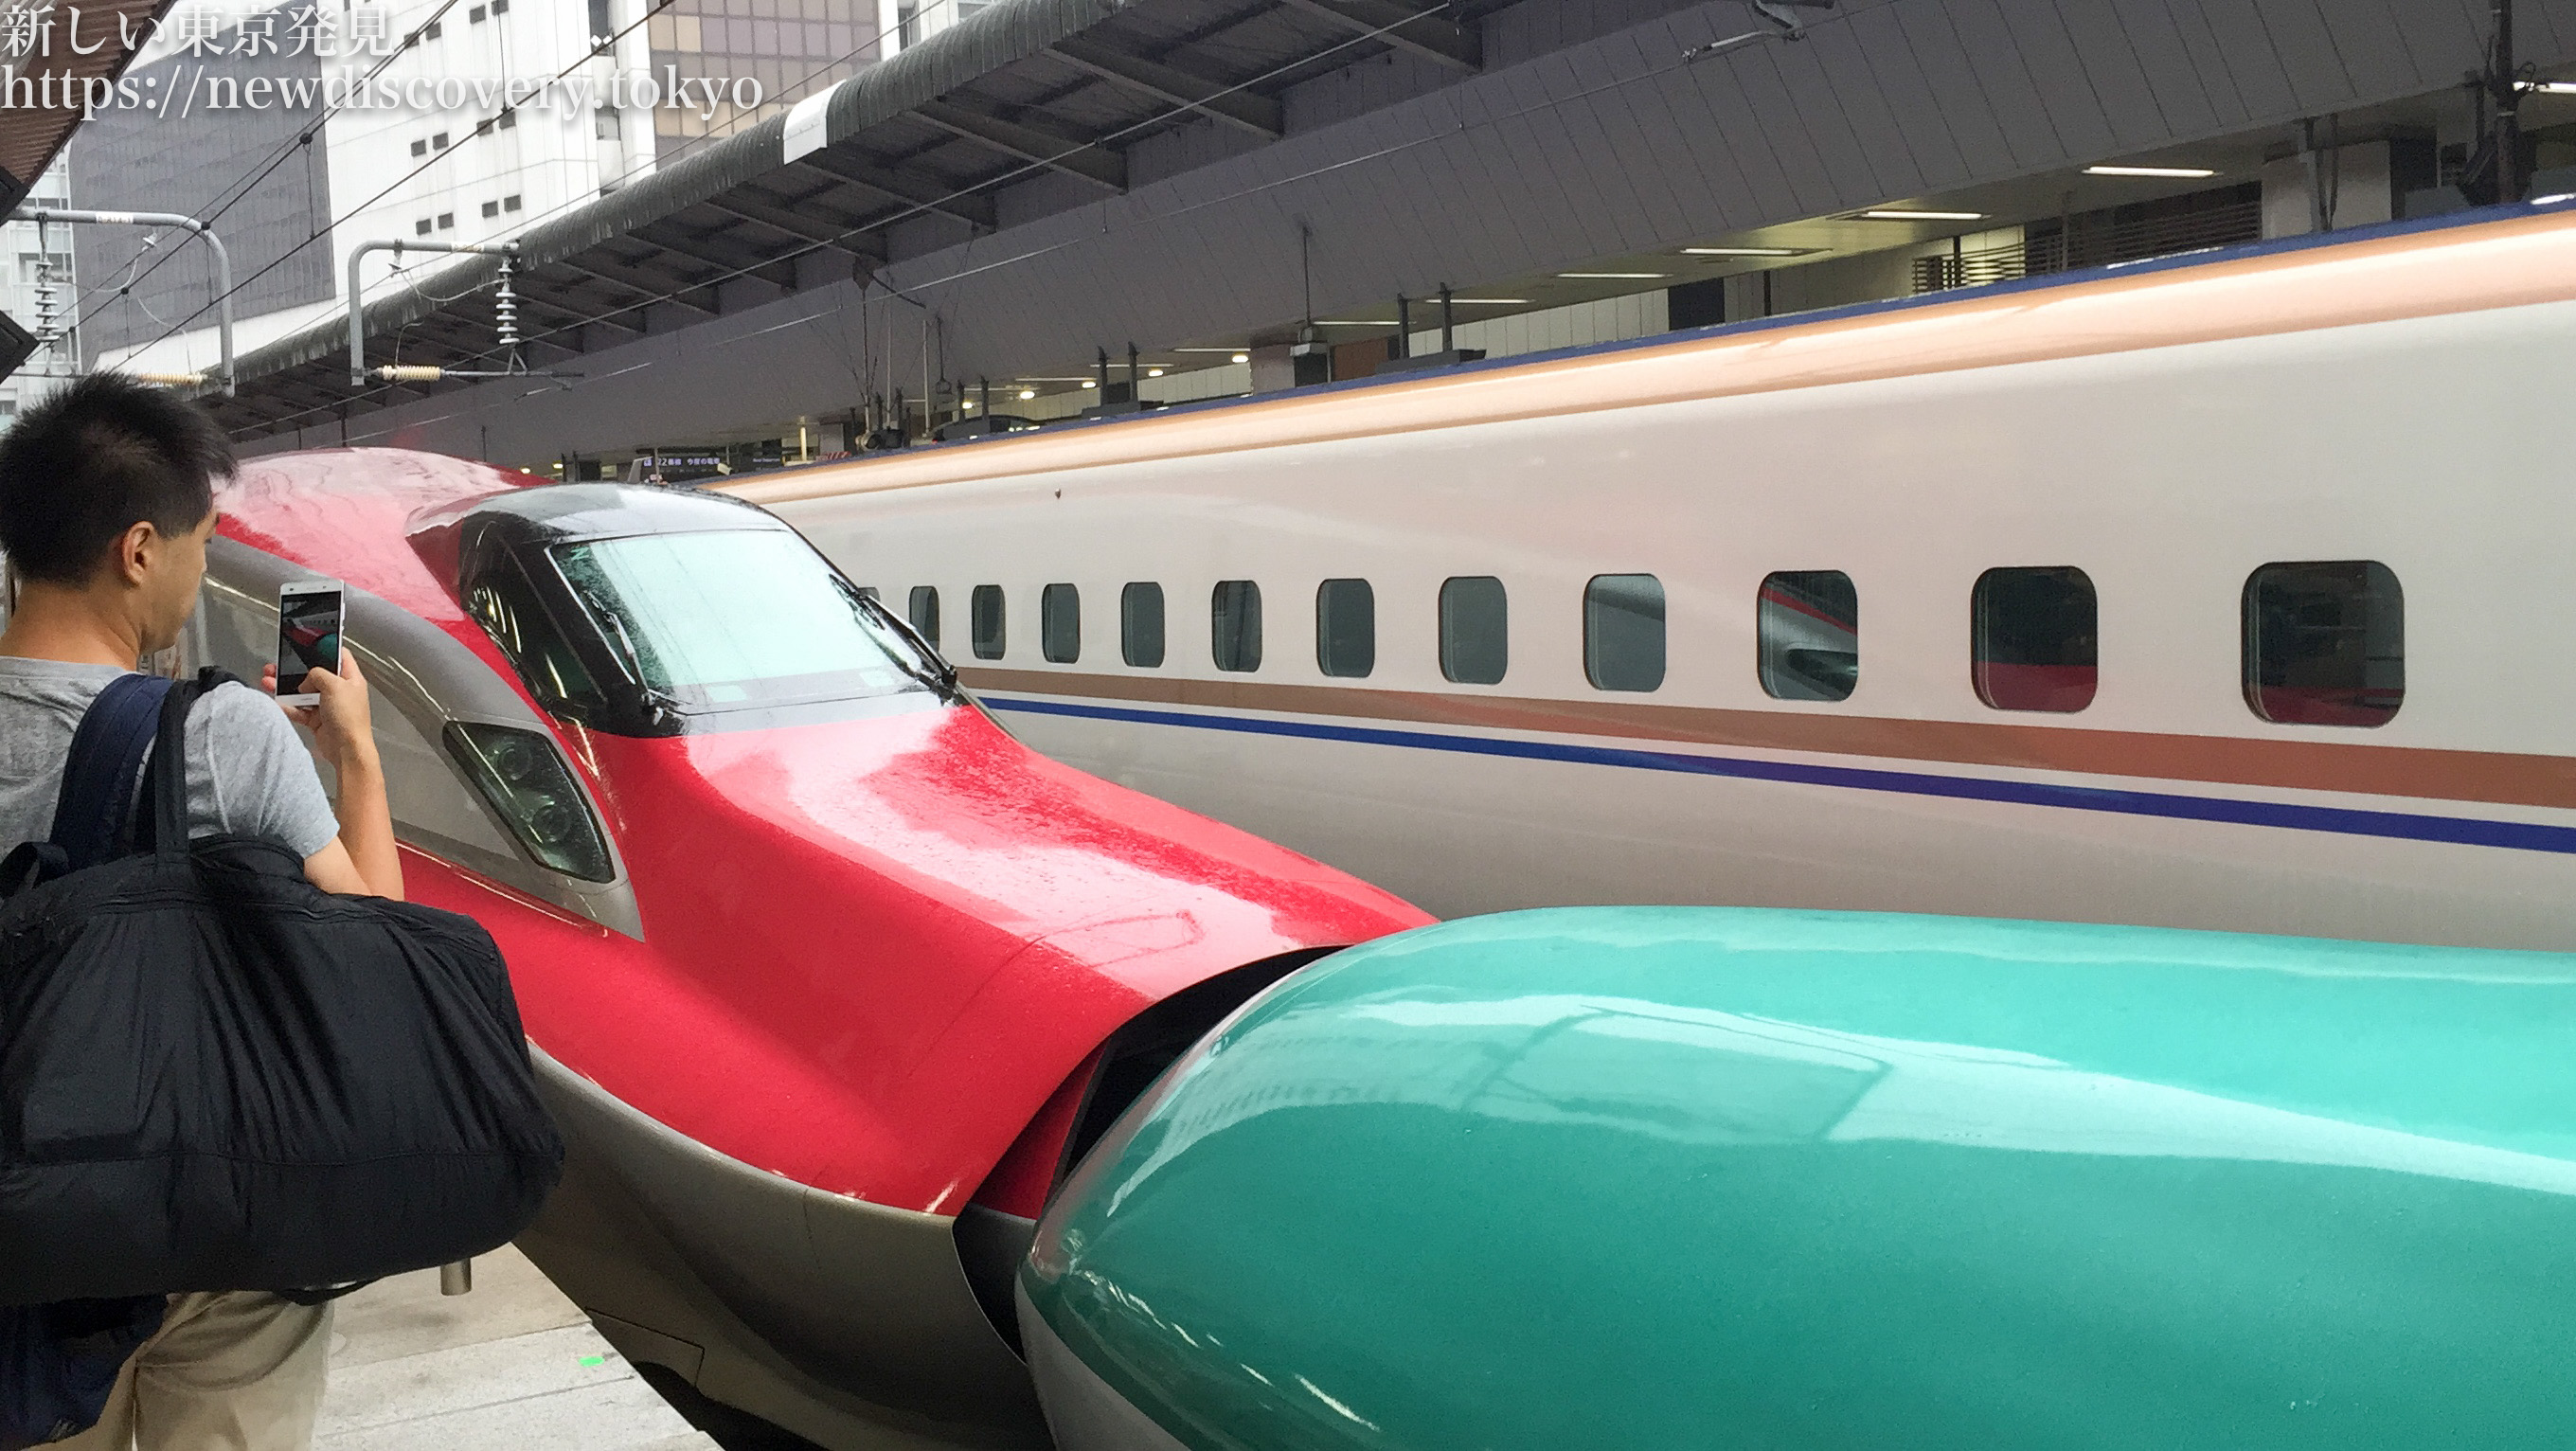 子鉄トレインビュースポット 東京駅で 電車好きな子供と新幹線をたっぷり見よう はやぶさ こまち連結や かがやきなども見れるよ 子連れ パパママを応援する情報チャンネル 新しい東京発見